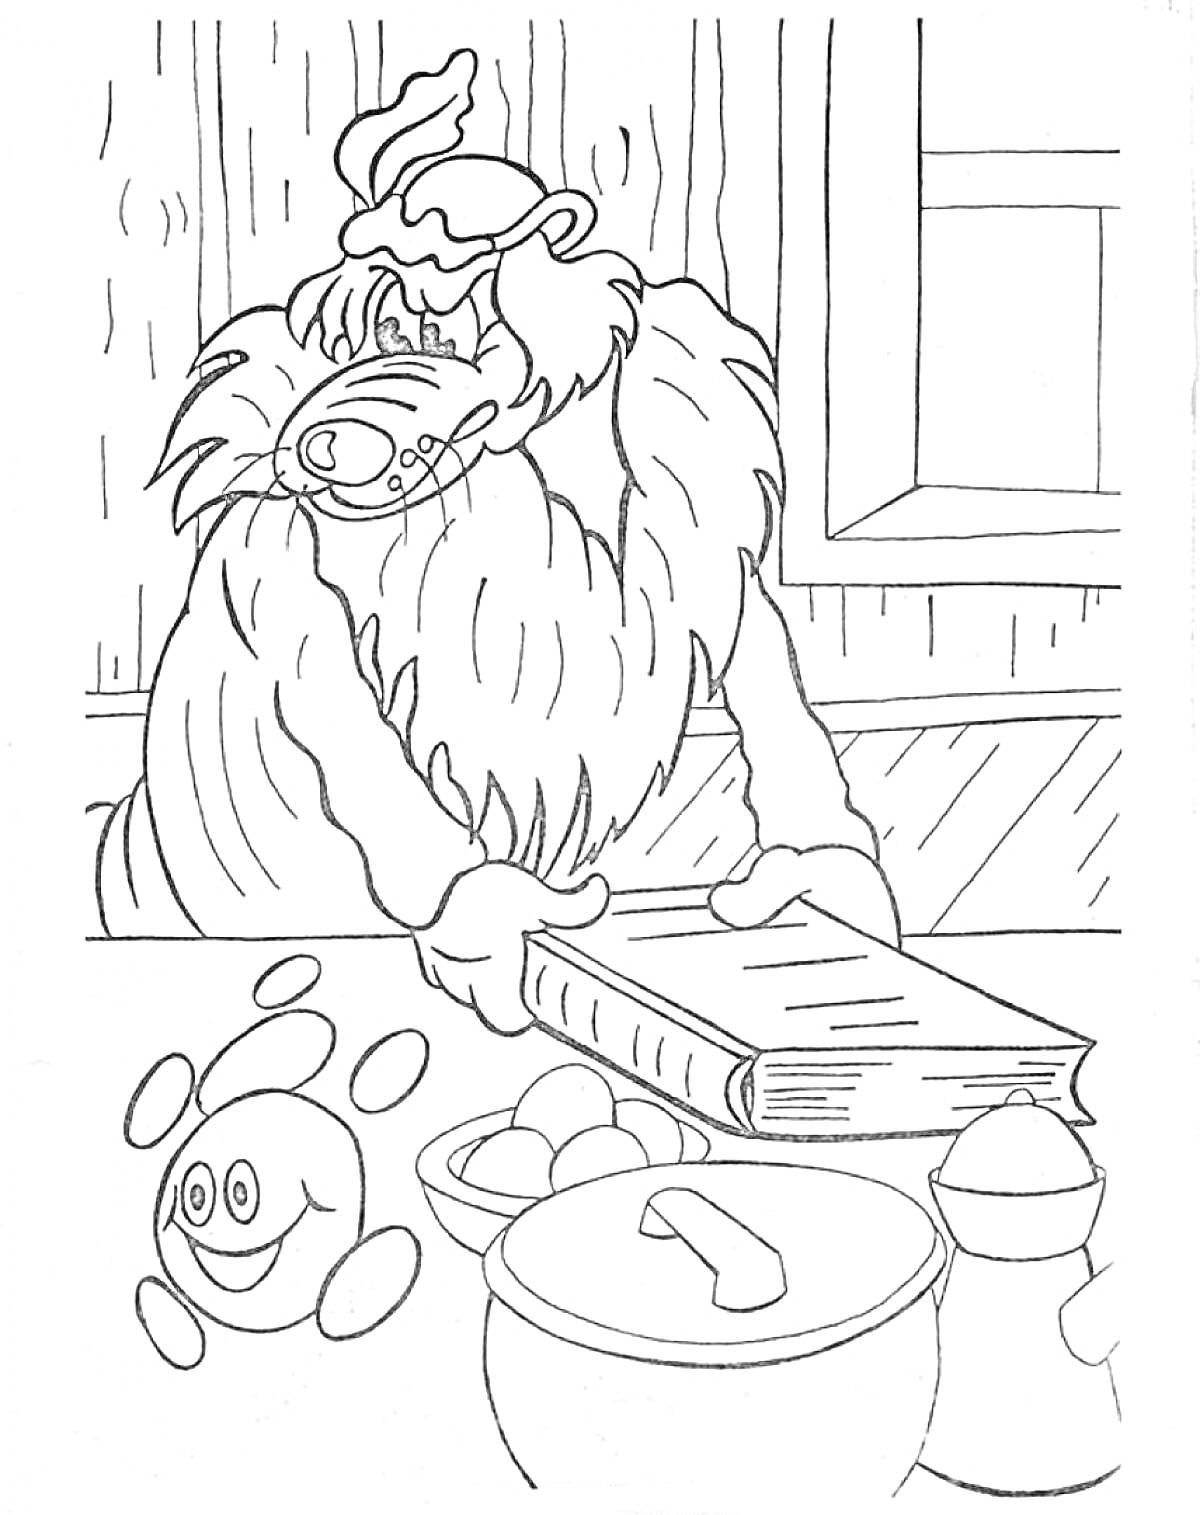 Медведь с книгой в доме, Капитошка, кастрюля, сольница, перцемолка